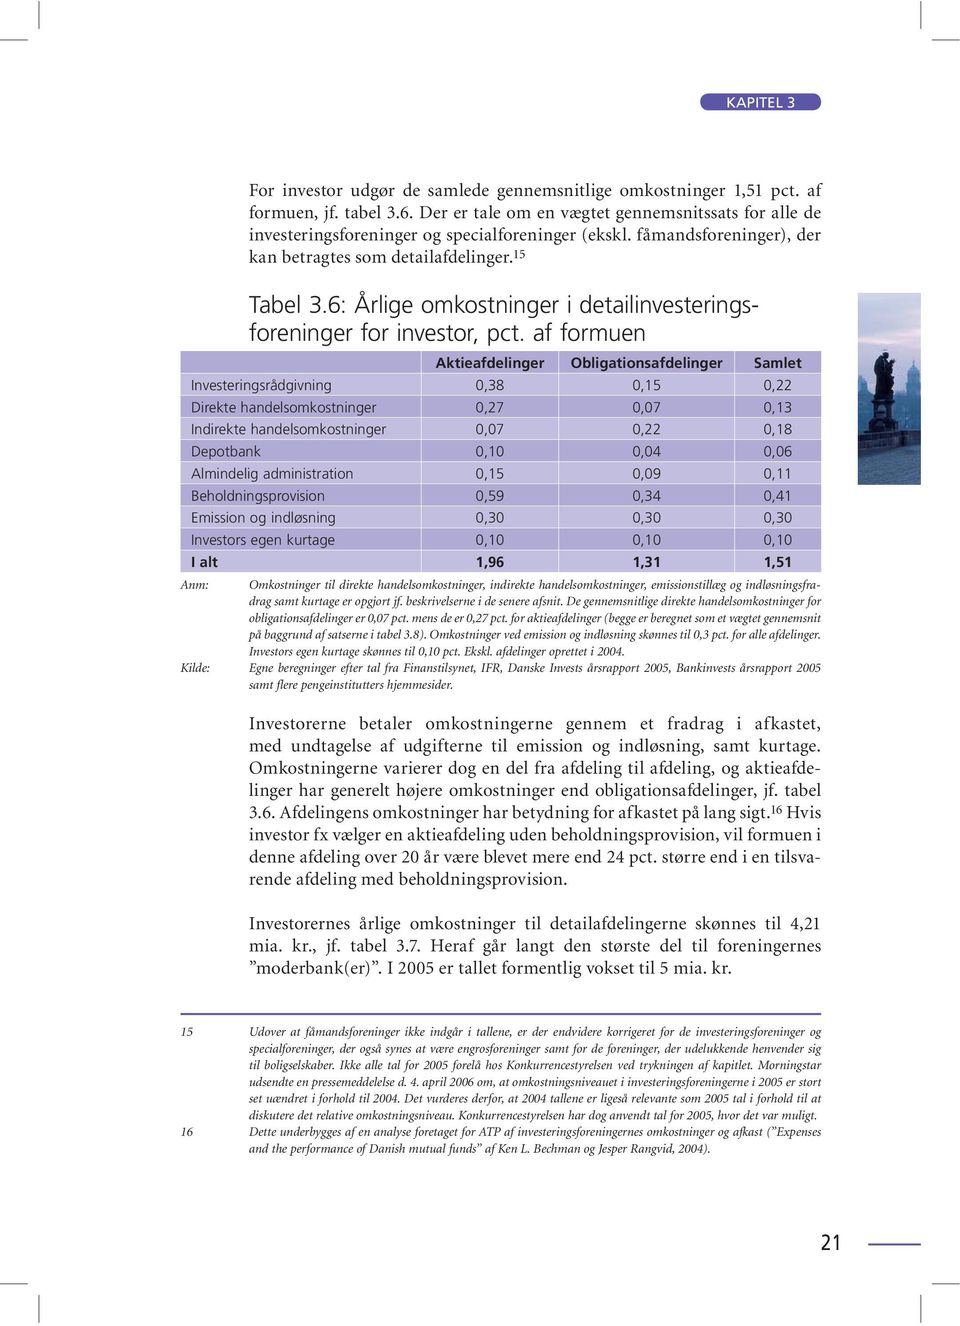 6: Årlige omkostninger i detailinvesteringsforeninger for investor, pct.